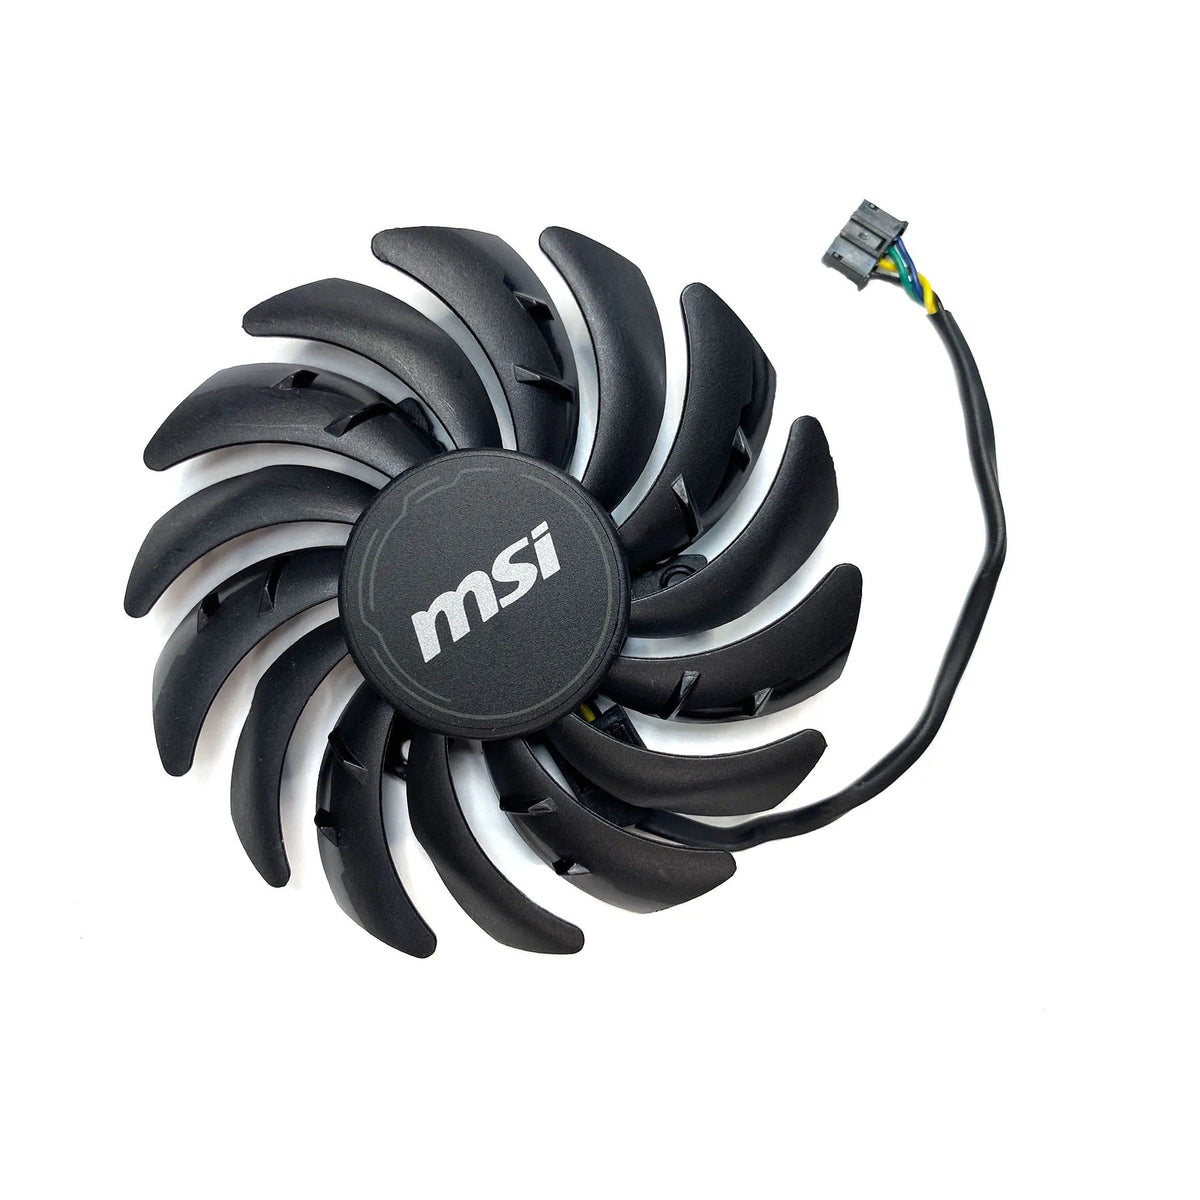 MSI GeForce RTX 3060 3060Ti 3070 3080 3080Ti 3090 VENTUS Fan Replacement